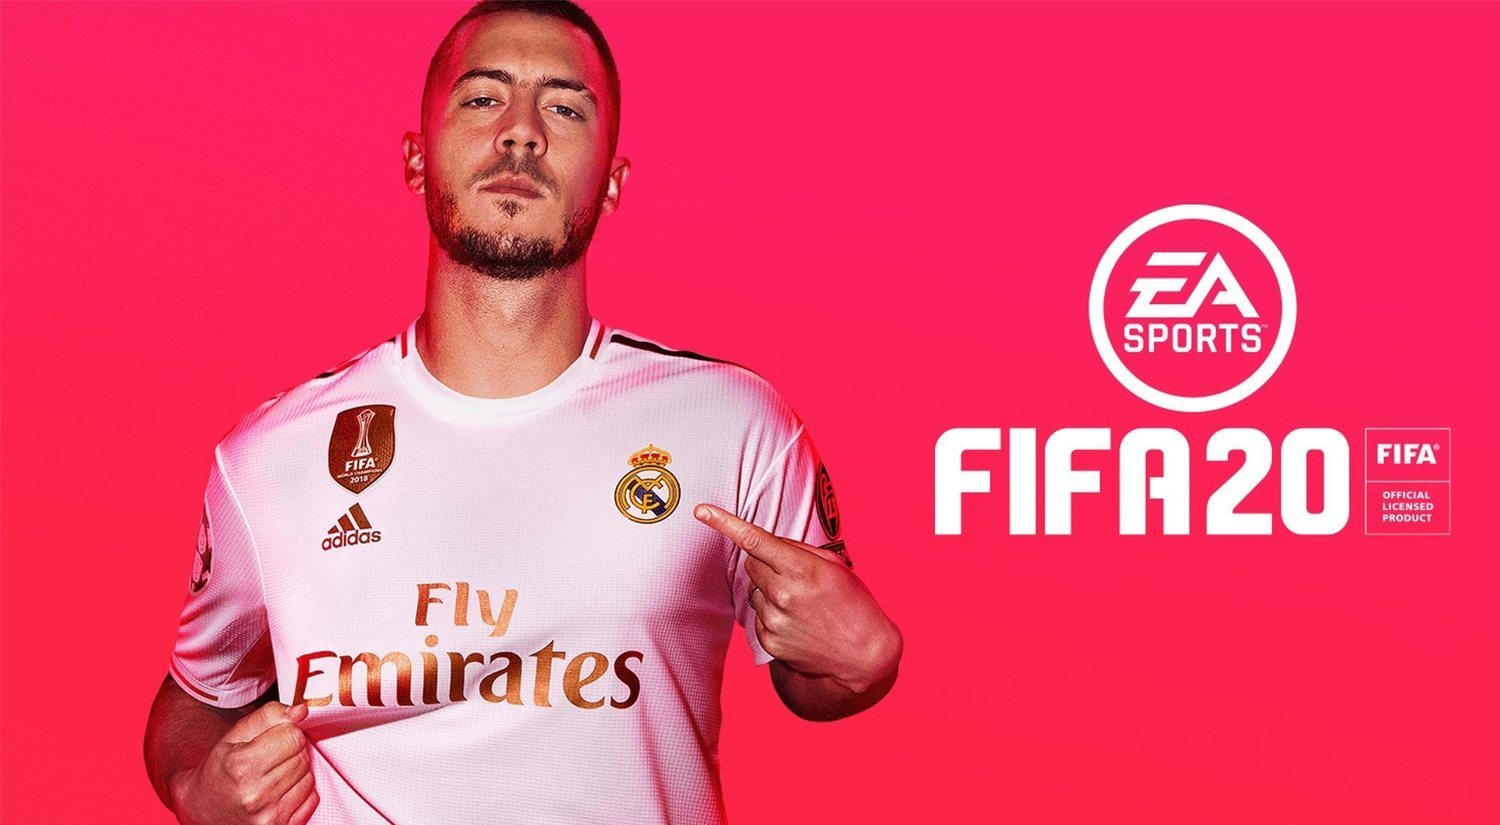 Manifestación contra EA y FIFA 20 en Madrid: fecha y detalles